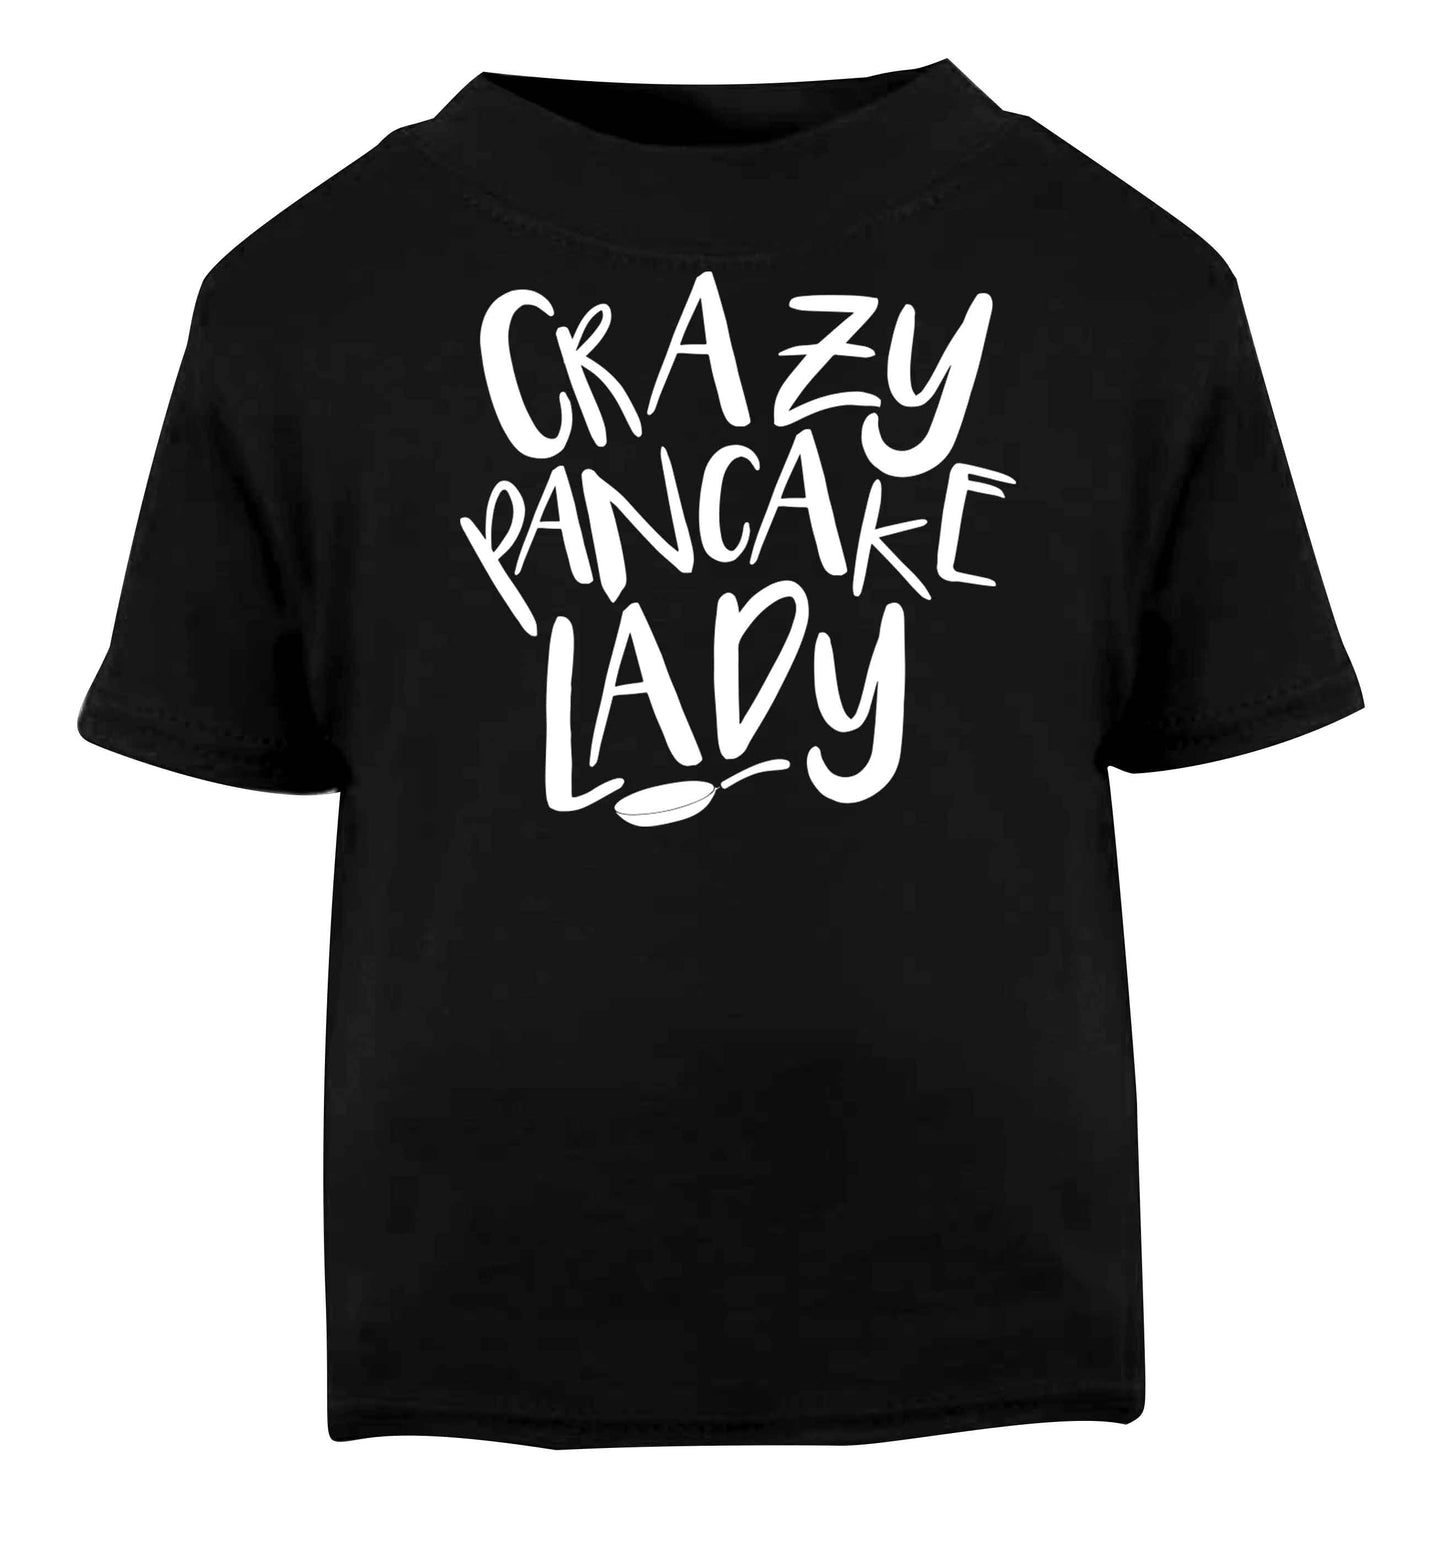 Crazy pancake lady Black baby toddler Tshirt 2 years